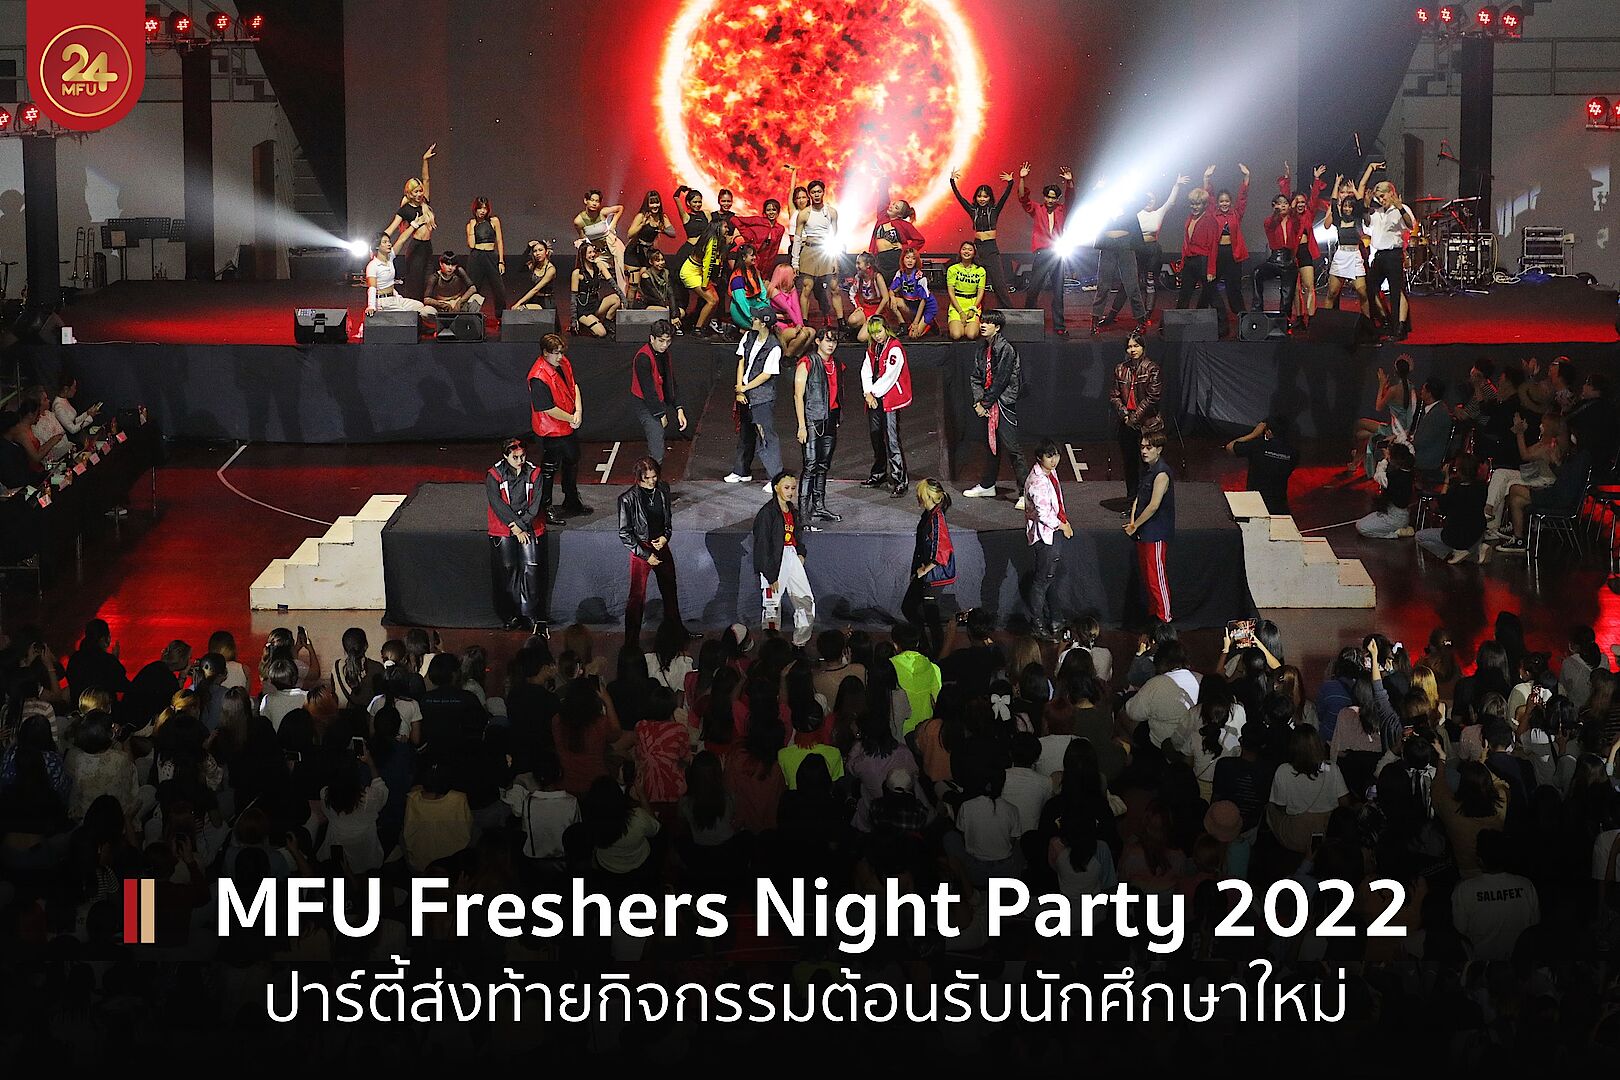 MFU Freshers Night Party 2022 ปาร์ตี้ส่งท้ายต้อนรับนักศึกษาใหม่ พร้อมเฟ้นหา The Pride of MFU